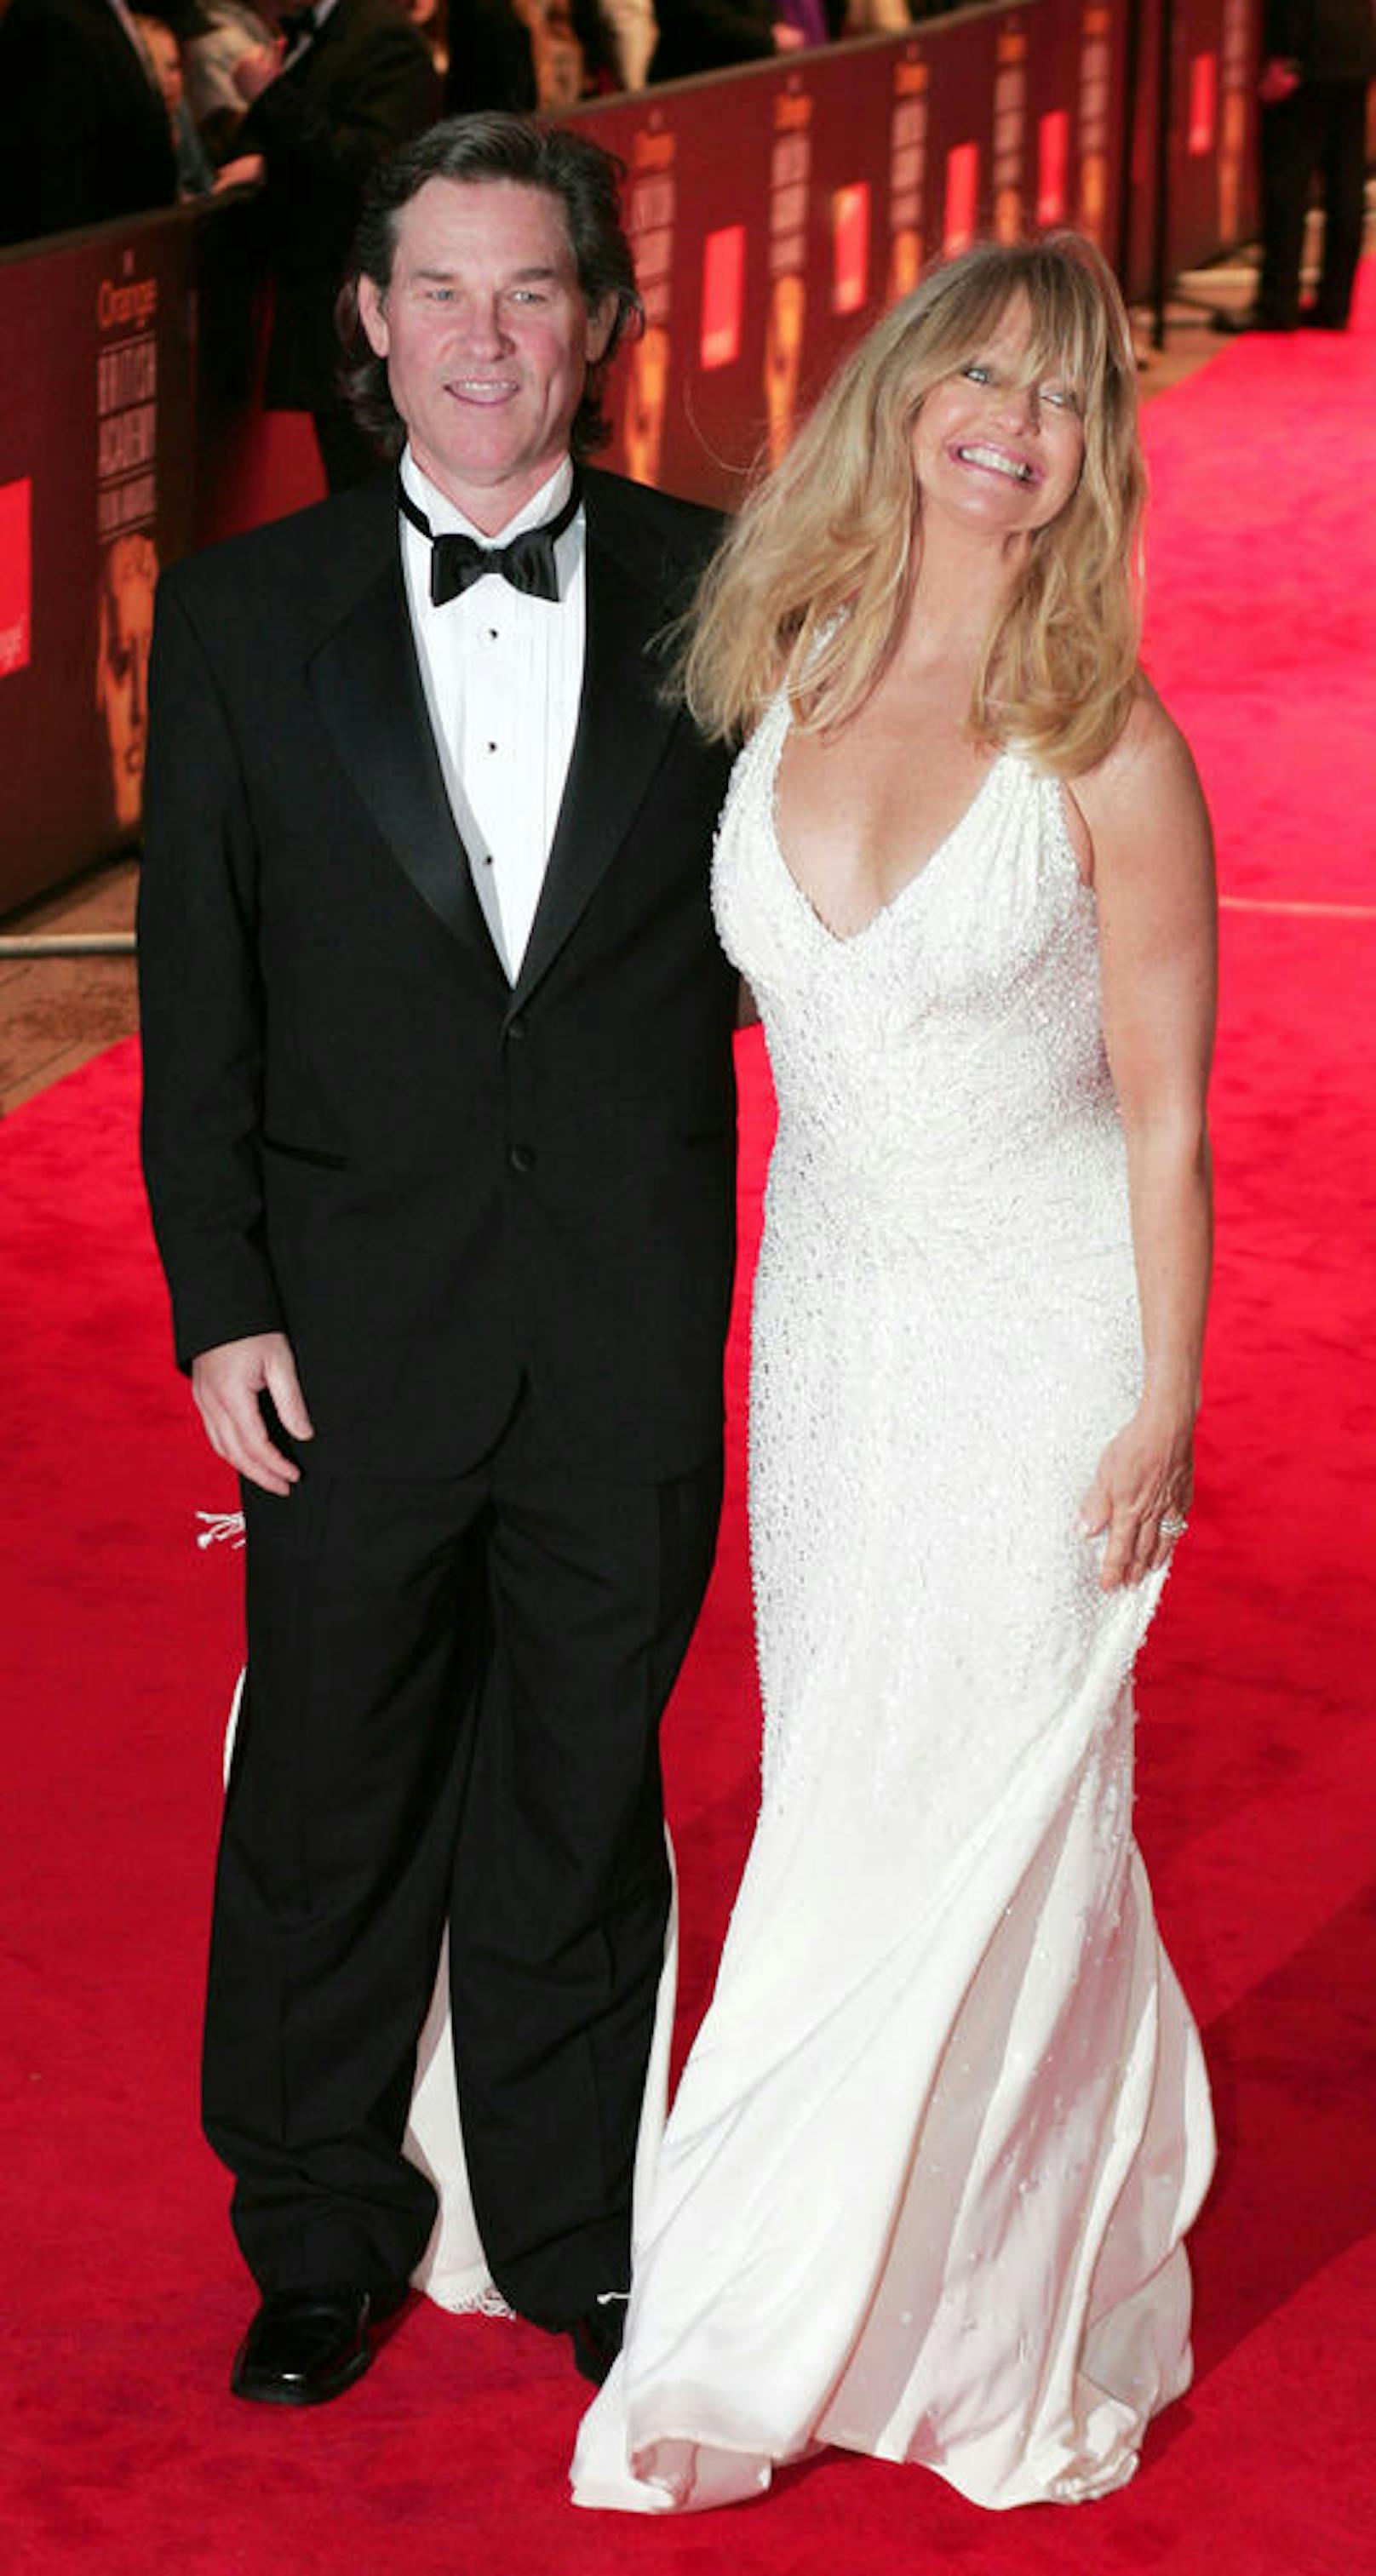 Kurt Russell und Goldie Hawn bei den BAFTA (British Academy of Film and Television Arts) Awards in London, 2005.